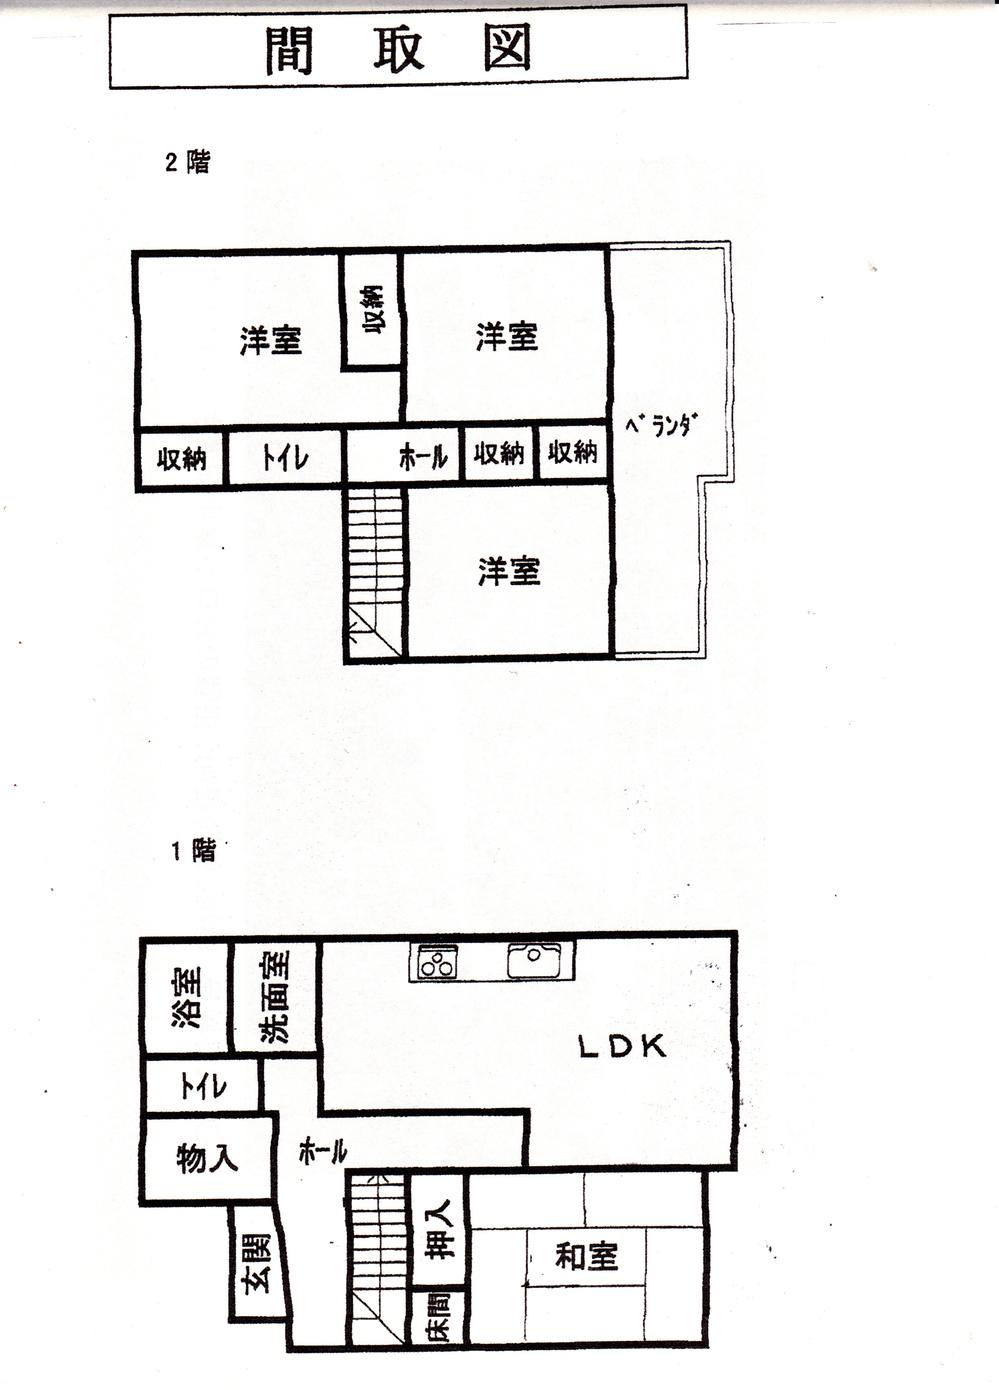 Floor plan. 9.8 million yen, 4LDK + S (storeroom), Land area 169.1 sq m , Building area 89.22 sq m 4LDK + S